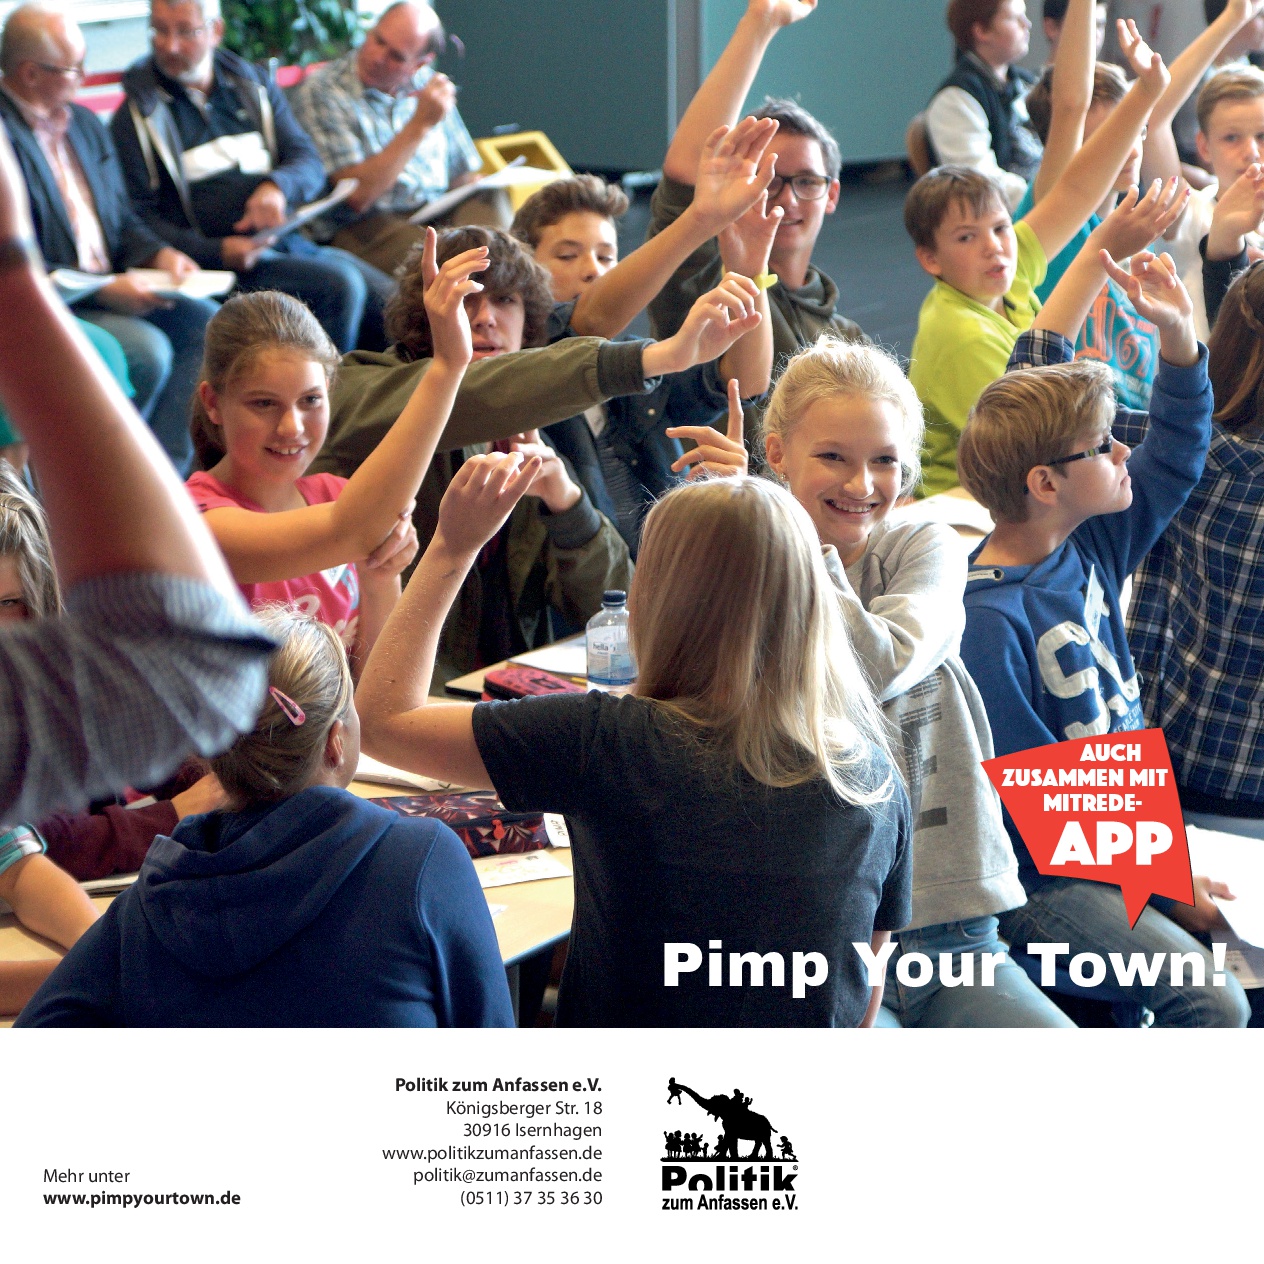 Pimp Your Town! Das Planspiel zur Kommunalpolitik